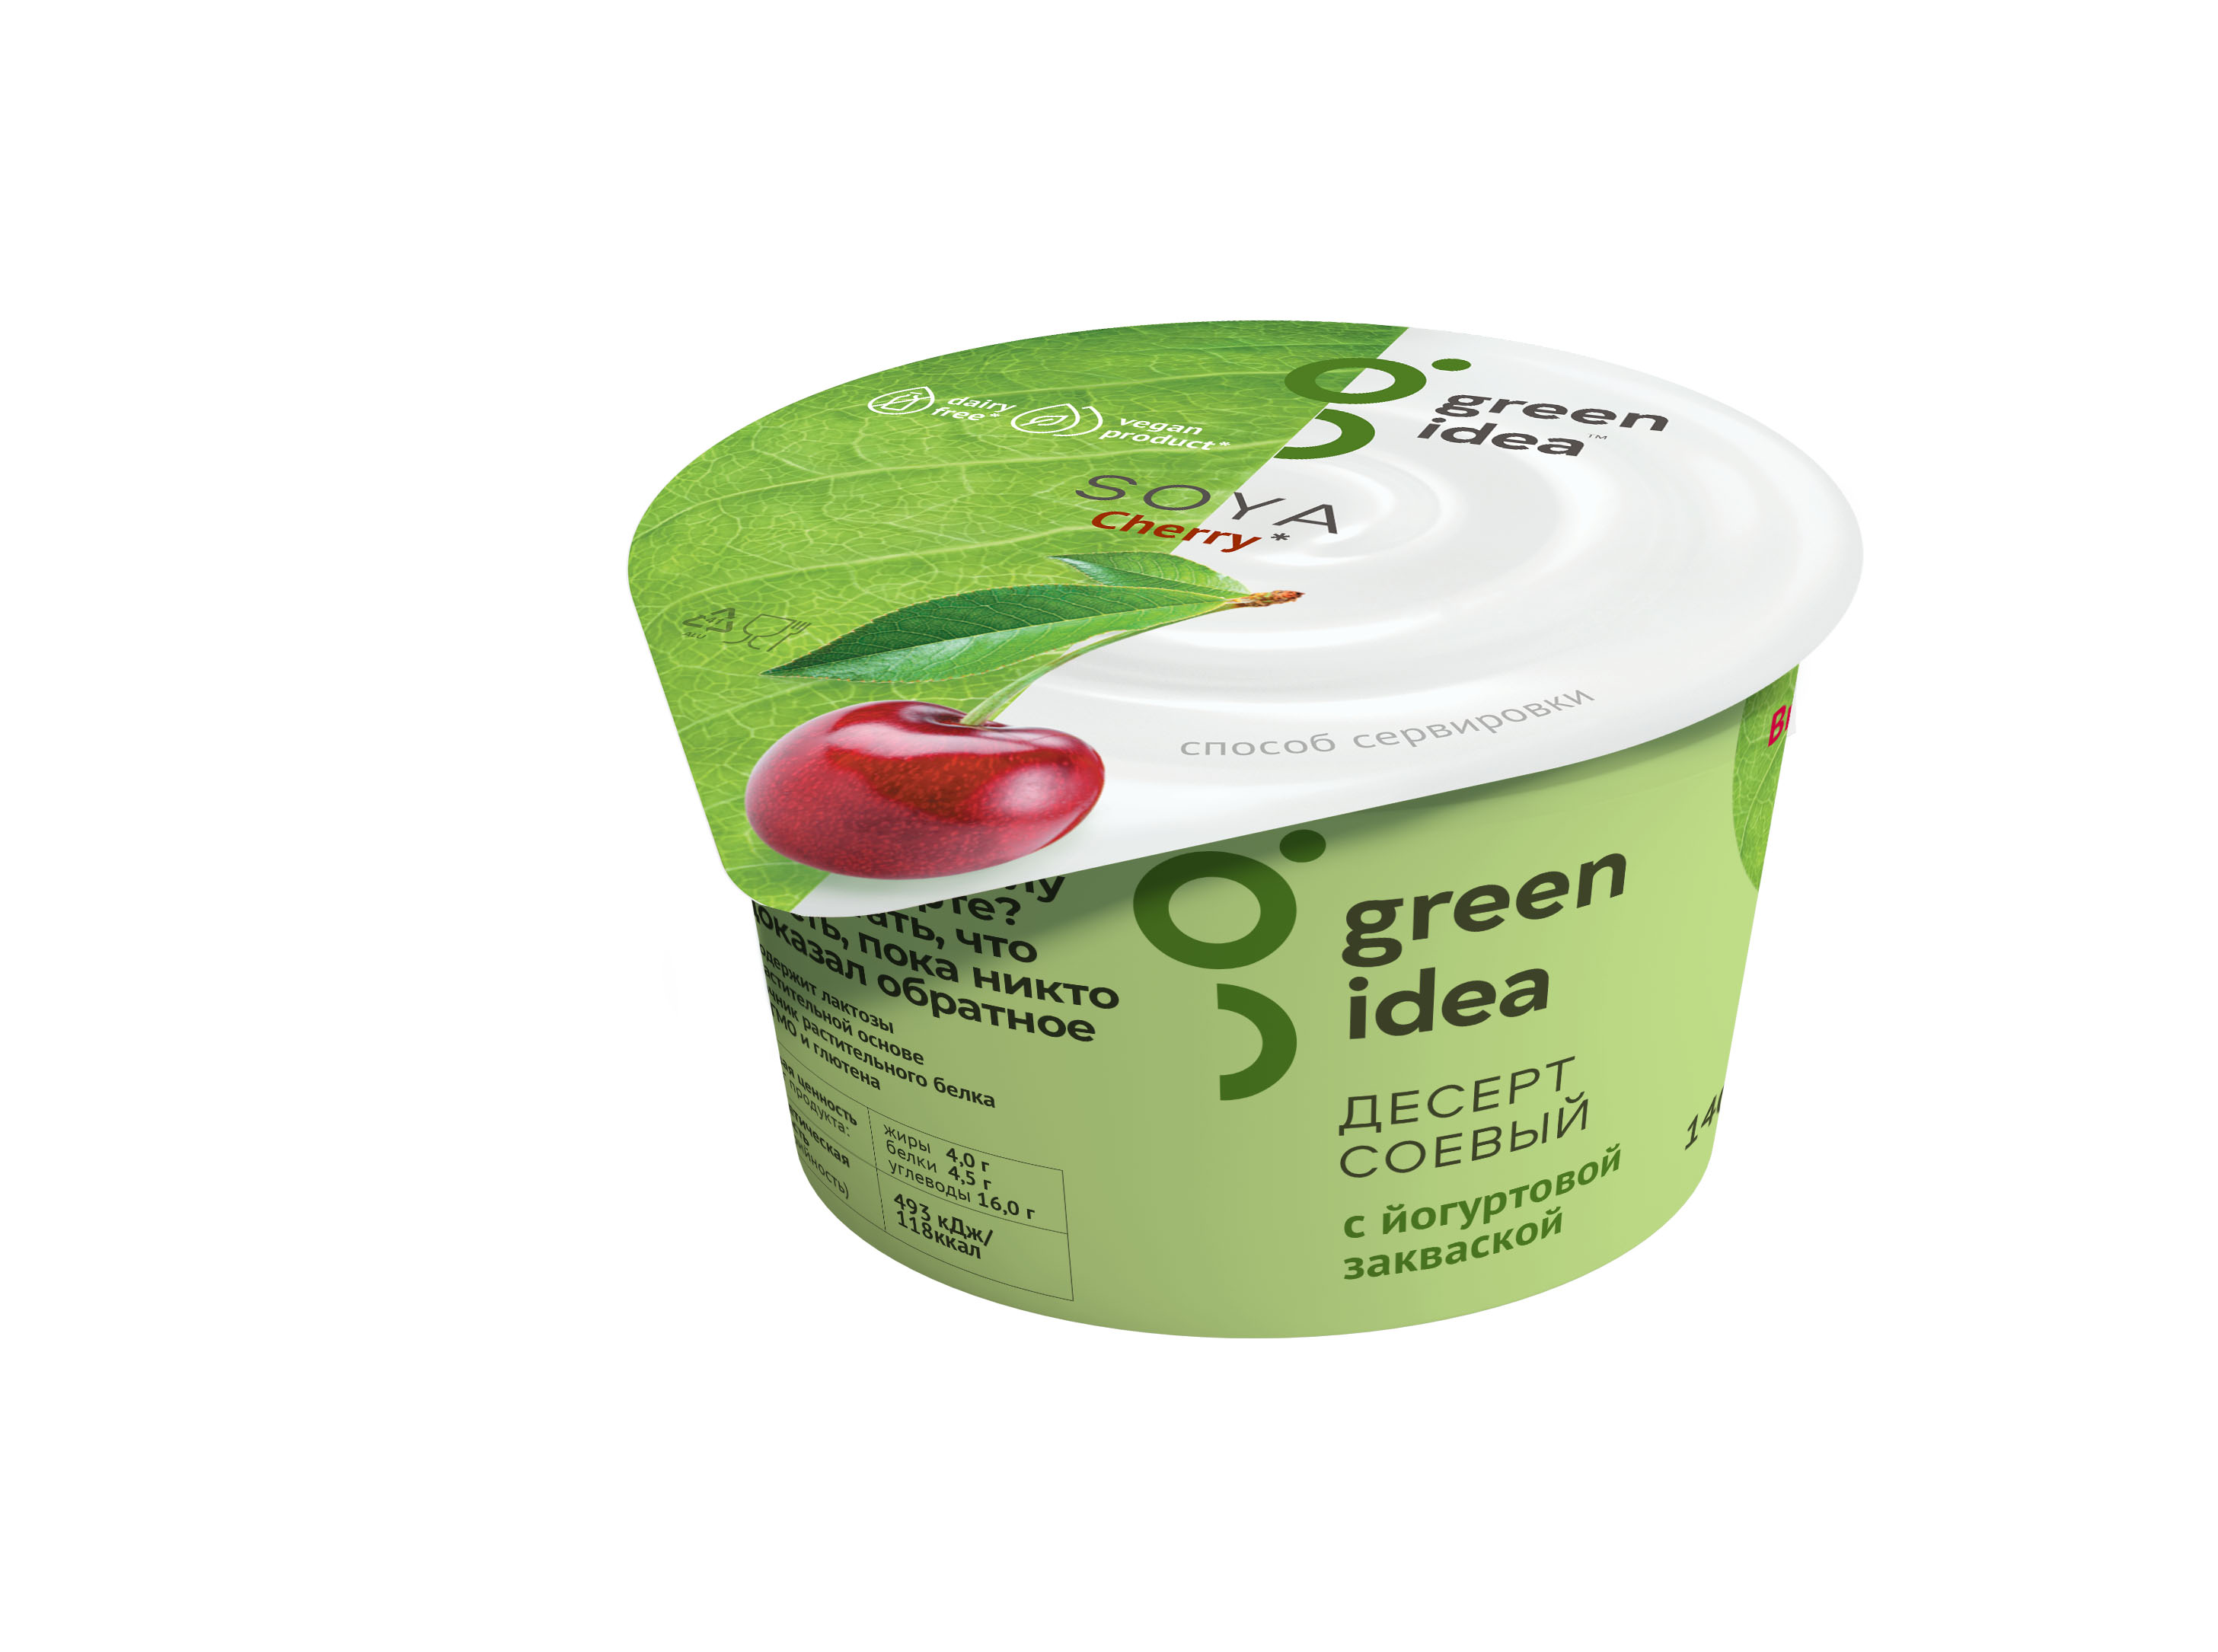 Десерт соевый с йогуртовой закваской (вишня) "Green Idea" 140 г